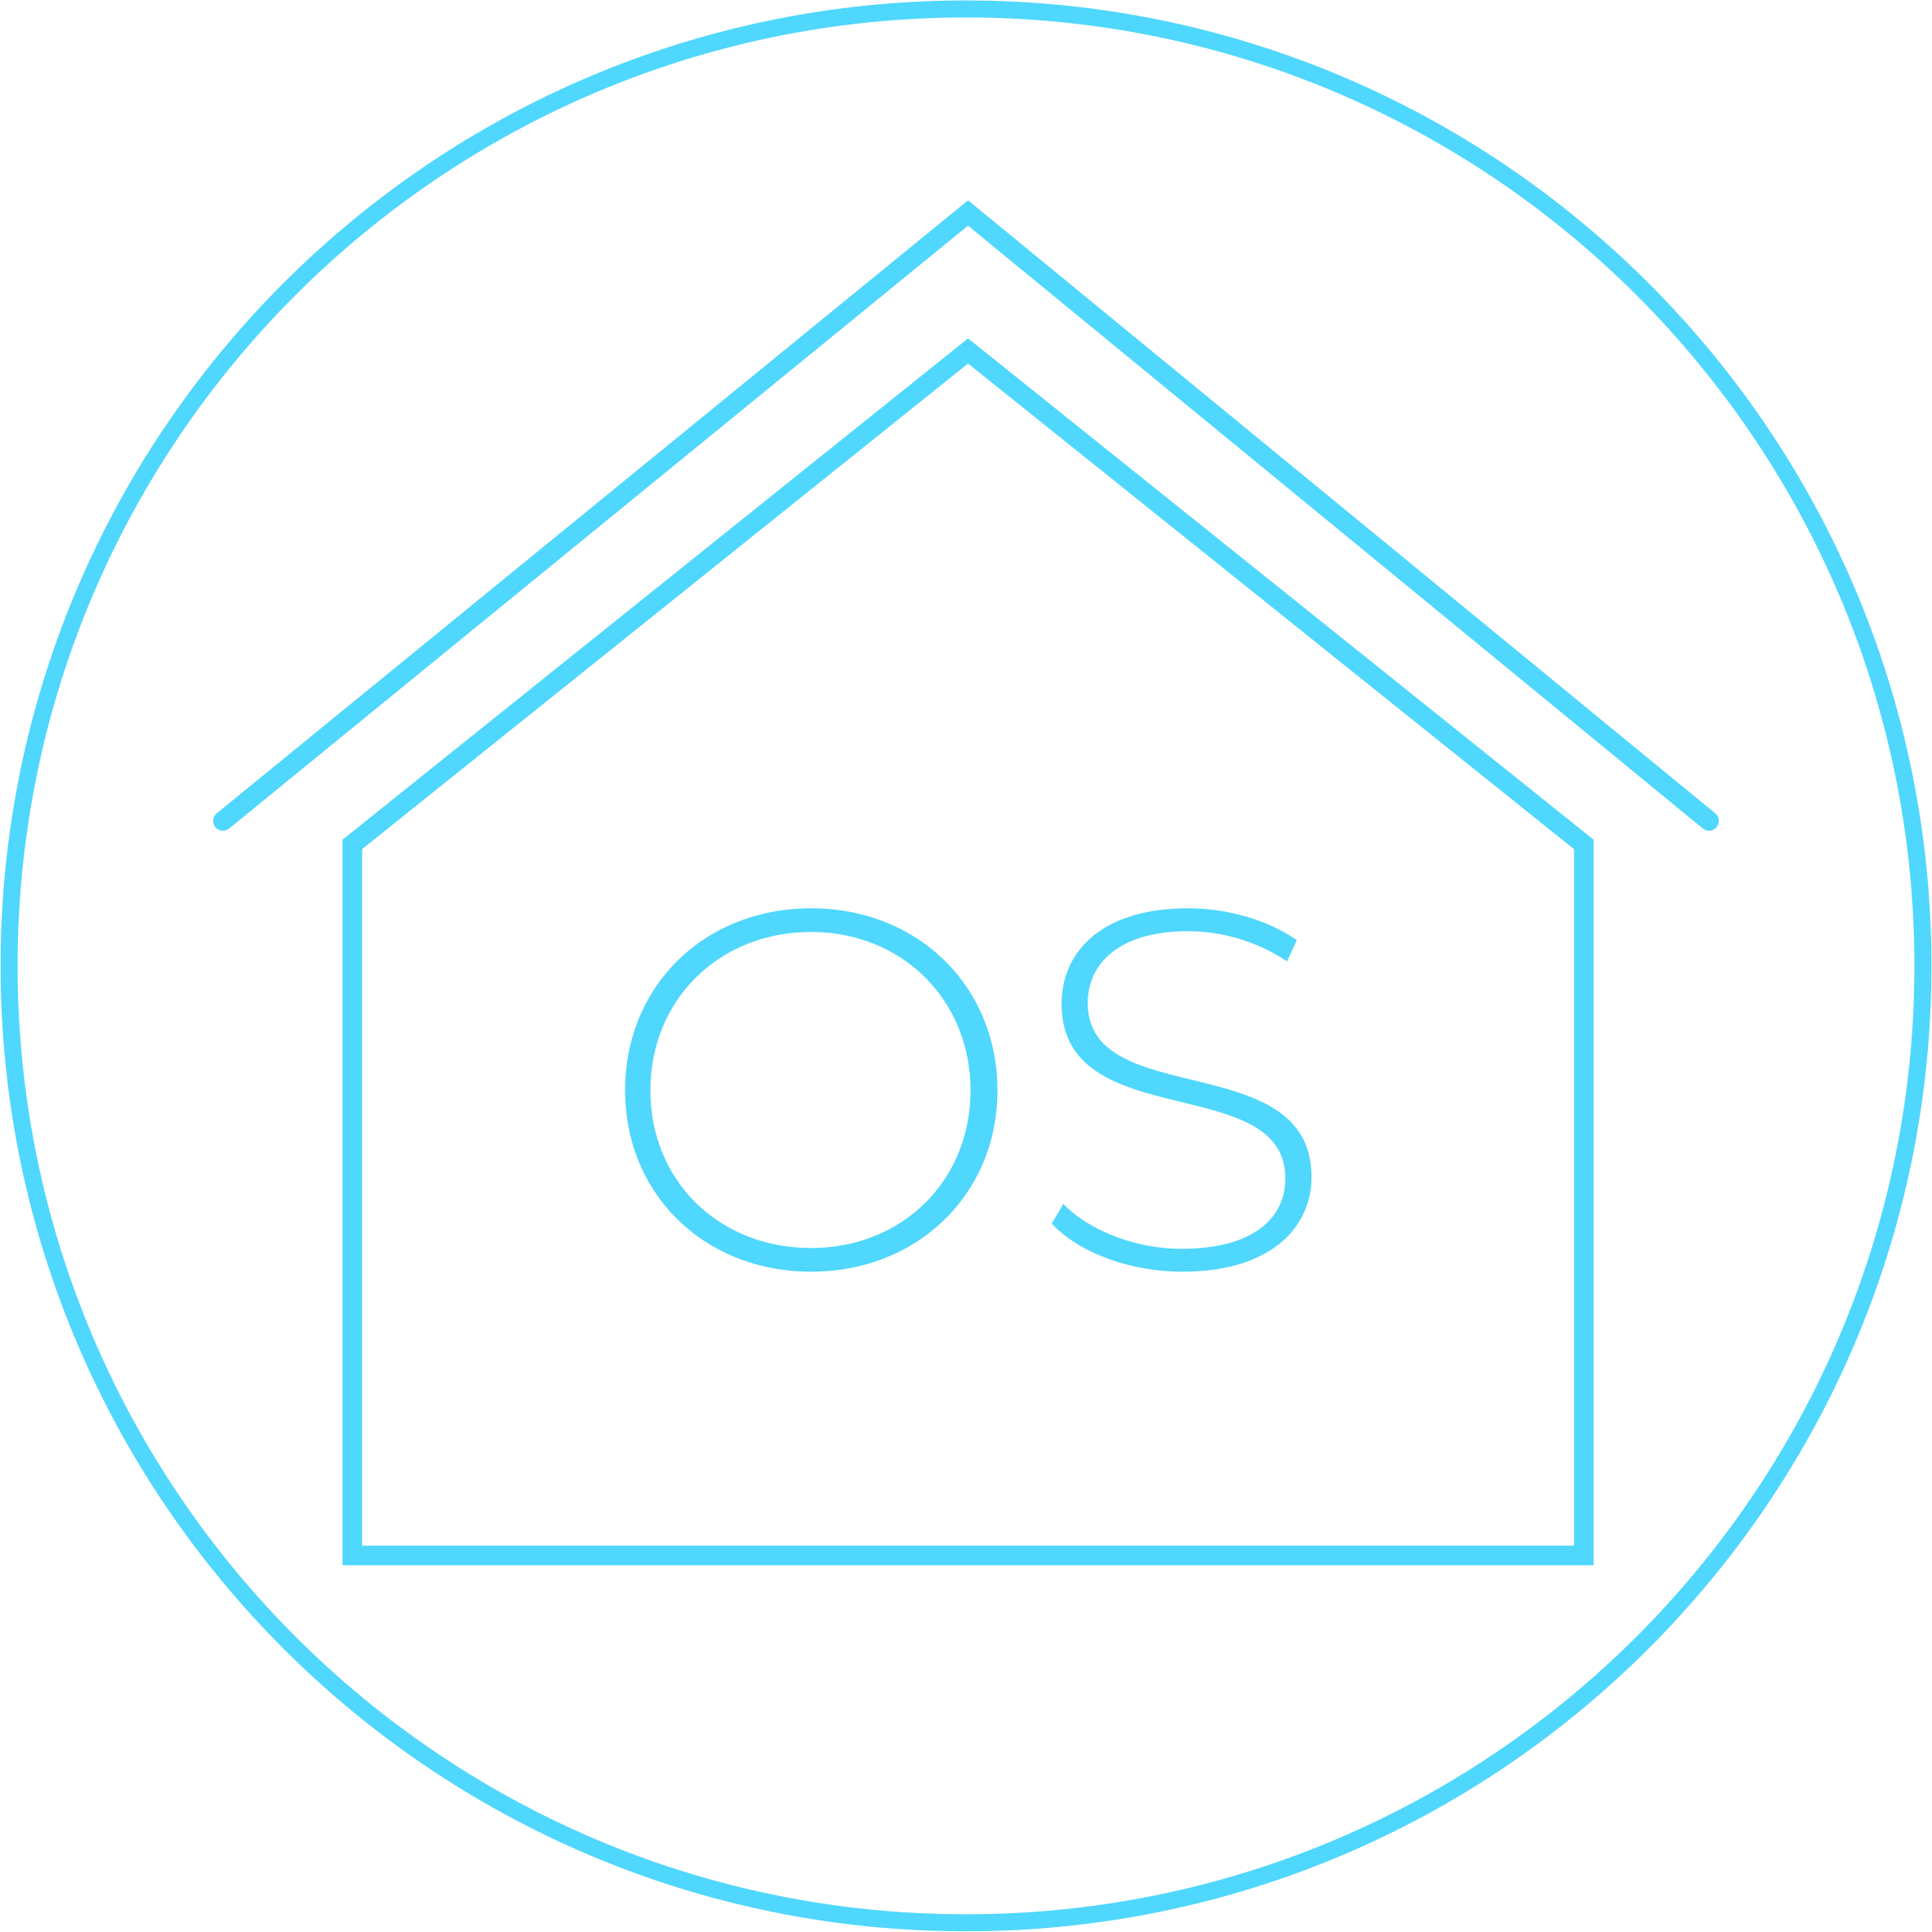 Smart Home OS